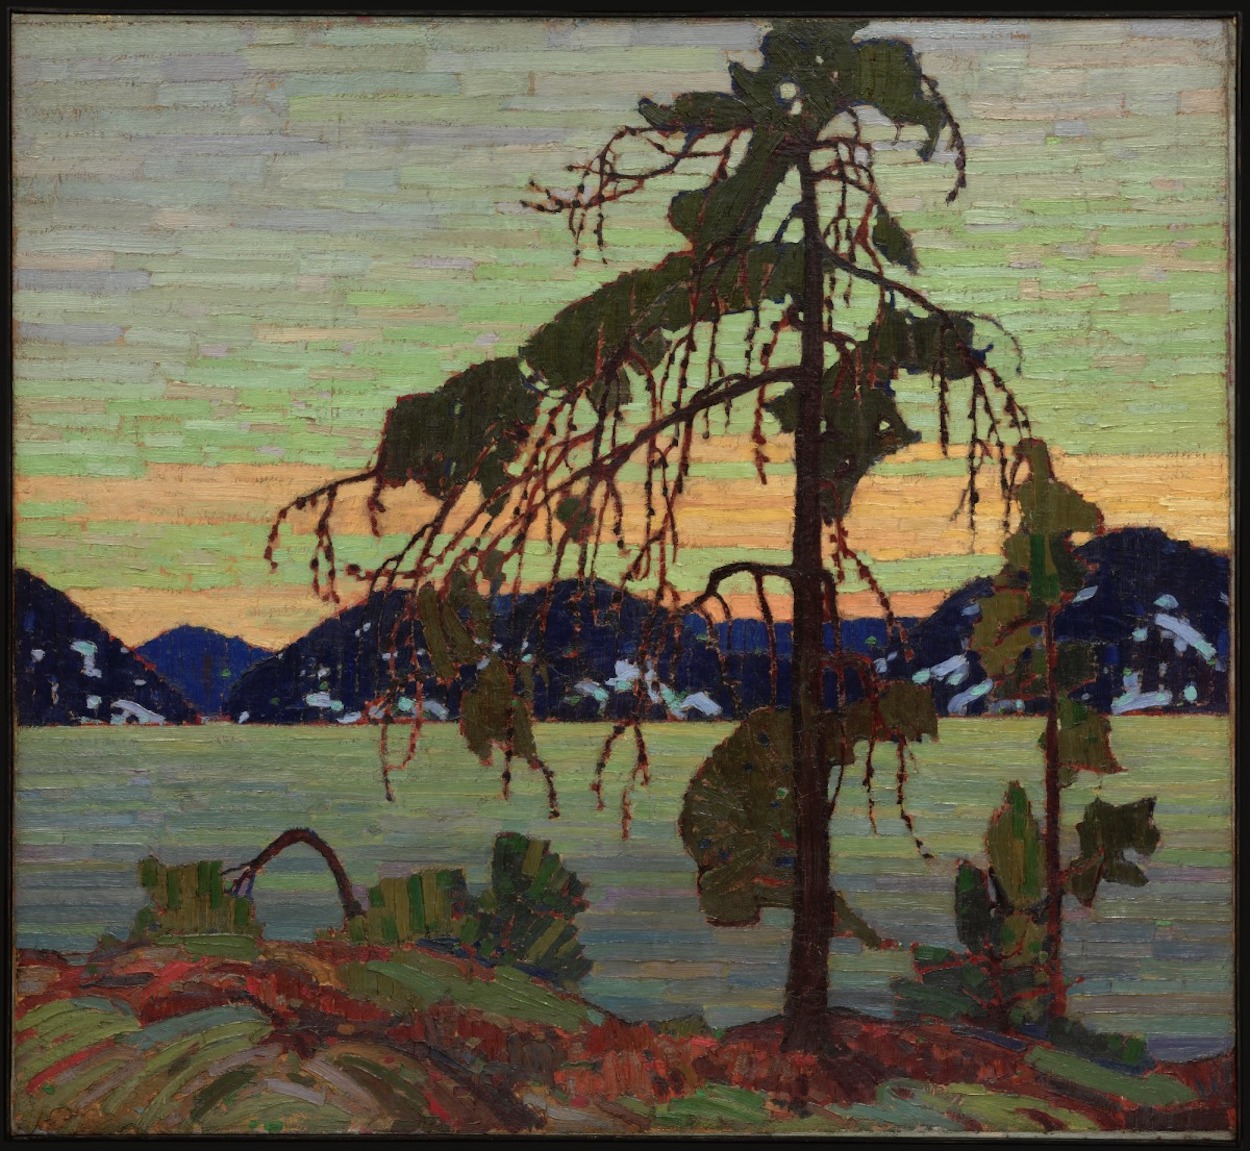 バンクス松 by Tom Thomson - 1916–17 - 127.9 × 139.8 cm 